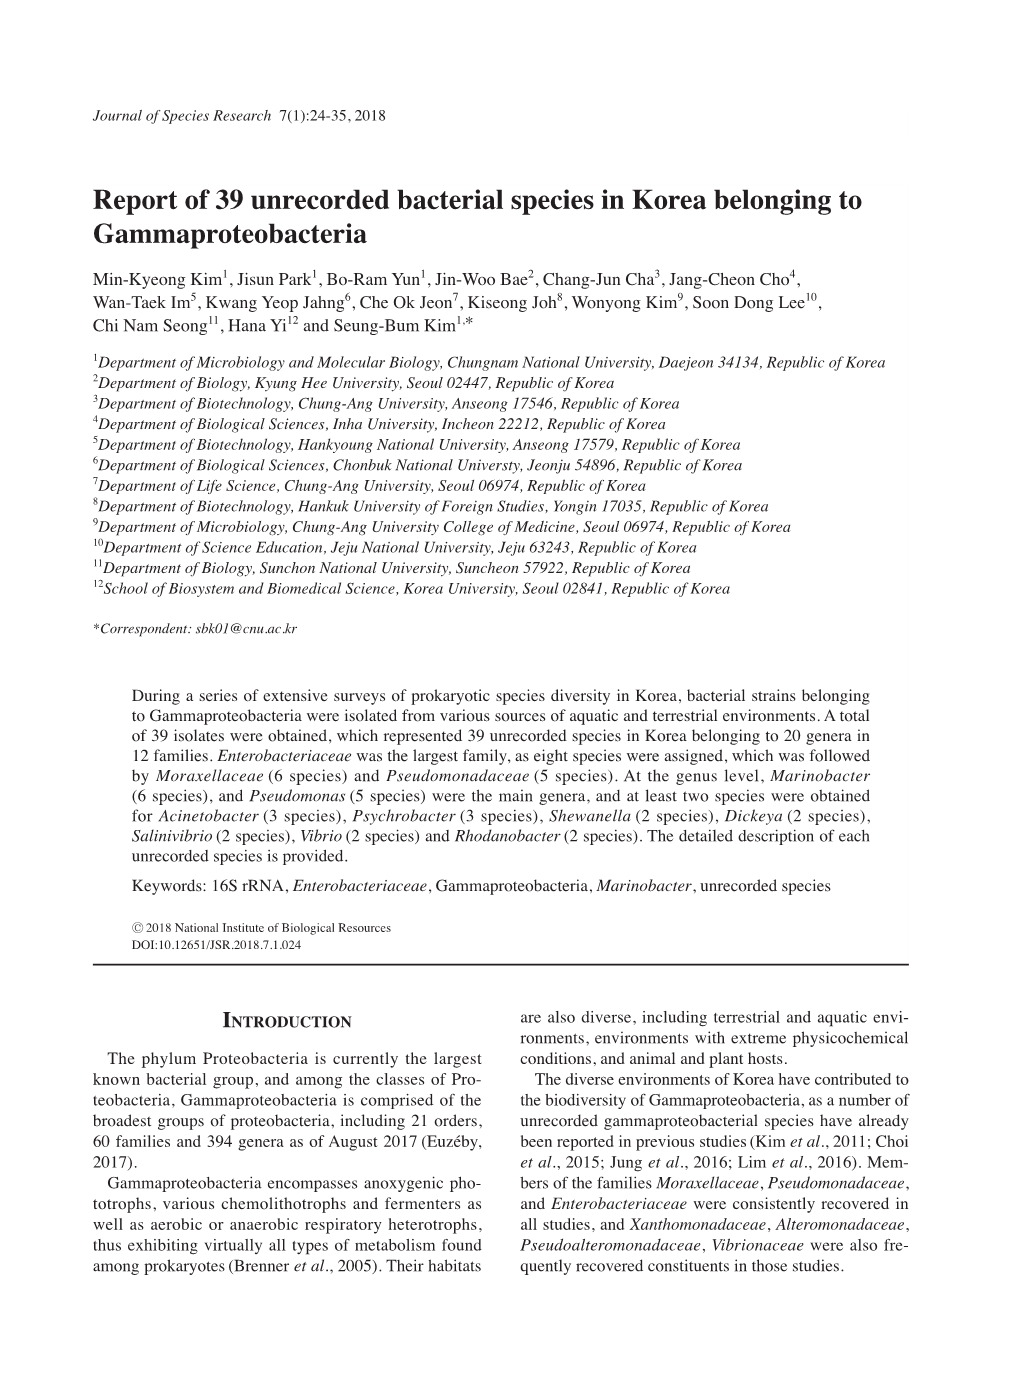 Report of 39 Unrecorded Bacterial Species in Korea Belonging to Gammaproteobacteria